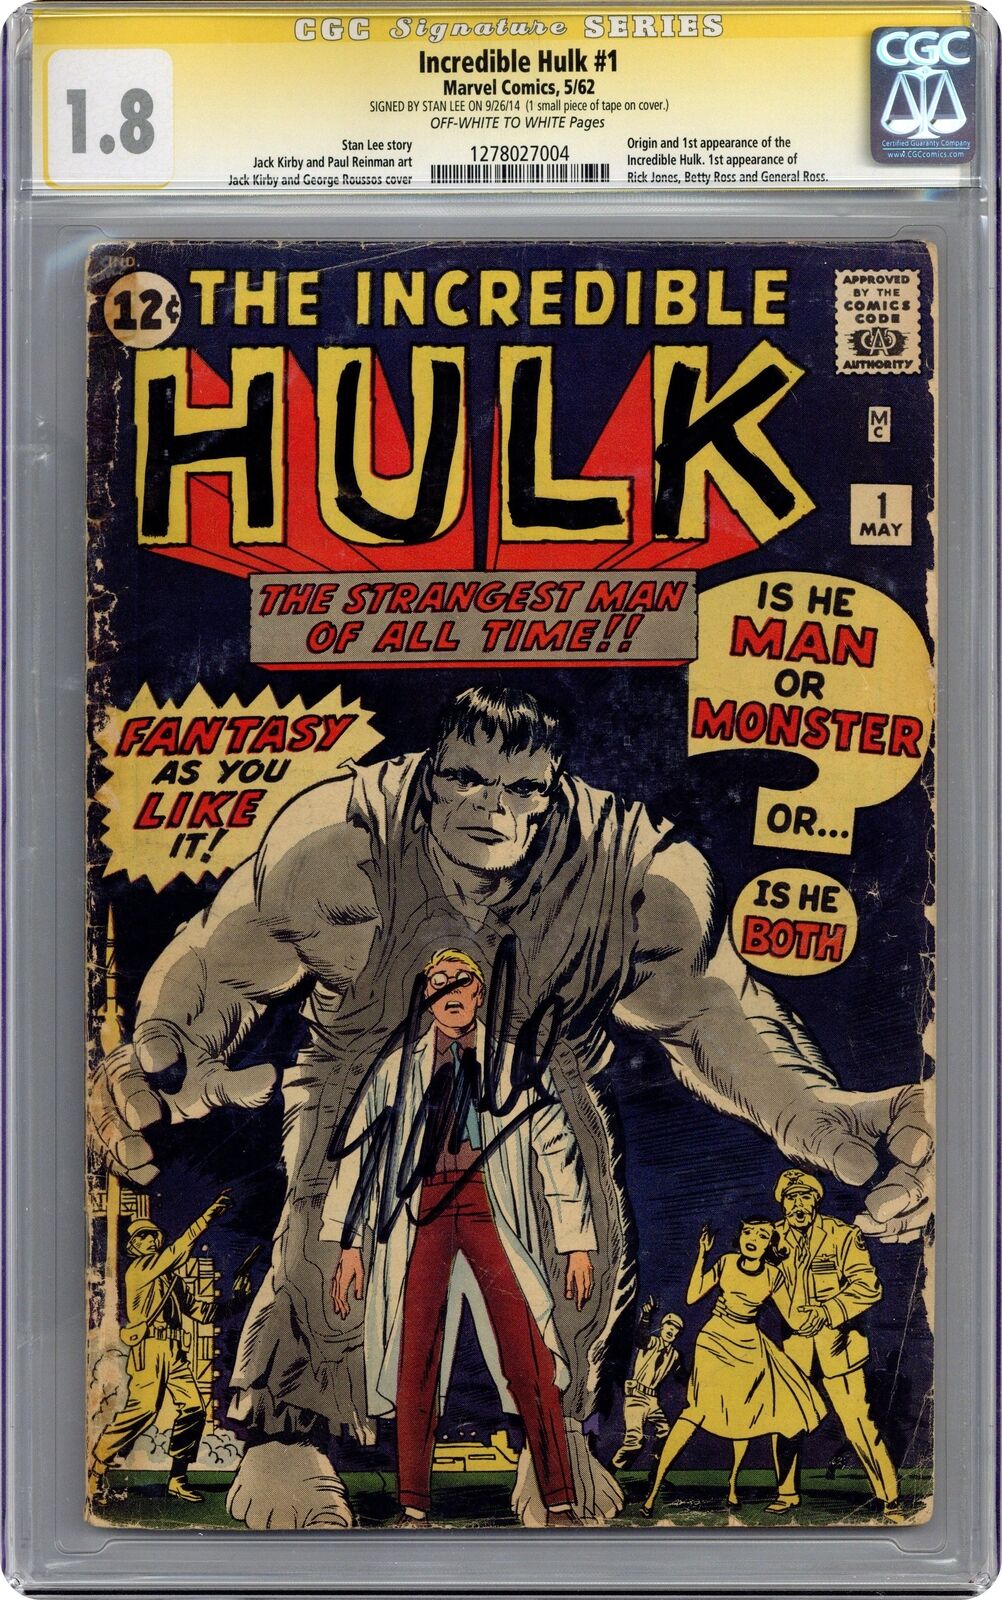 Incredible Hulk #1 CGC 1.8 SS Stan Lee 1962 1278027004 1st app. and origin Hulk